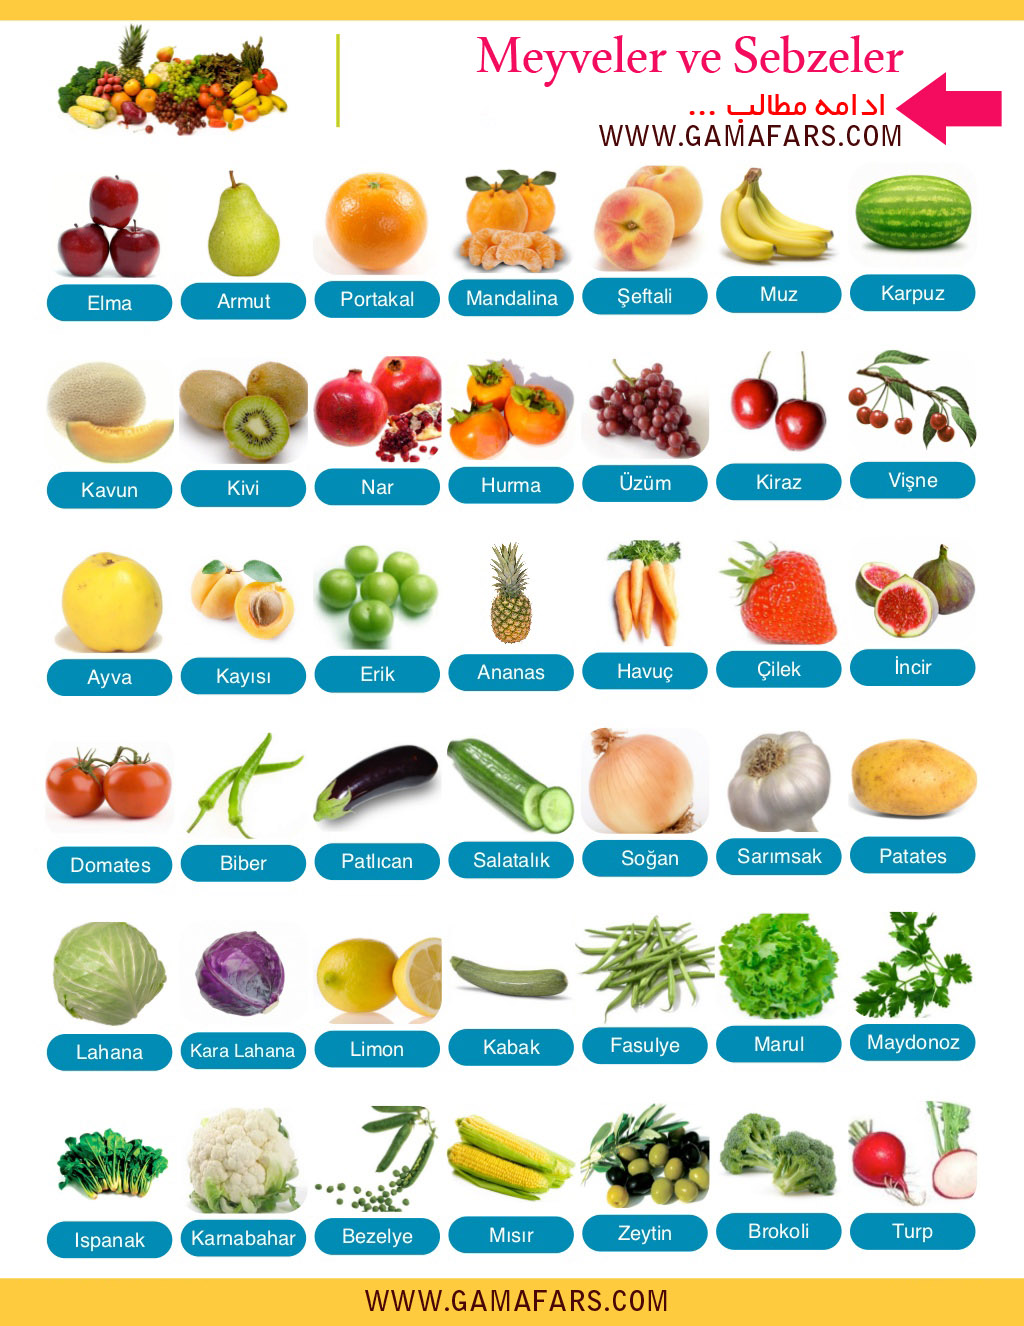 تلفظ سبزیجات به انگلیسی
